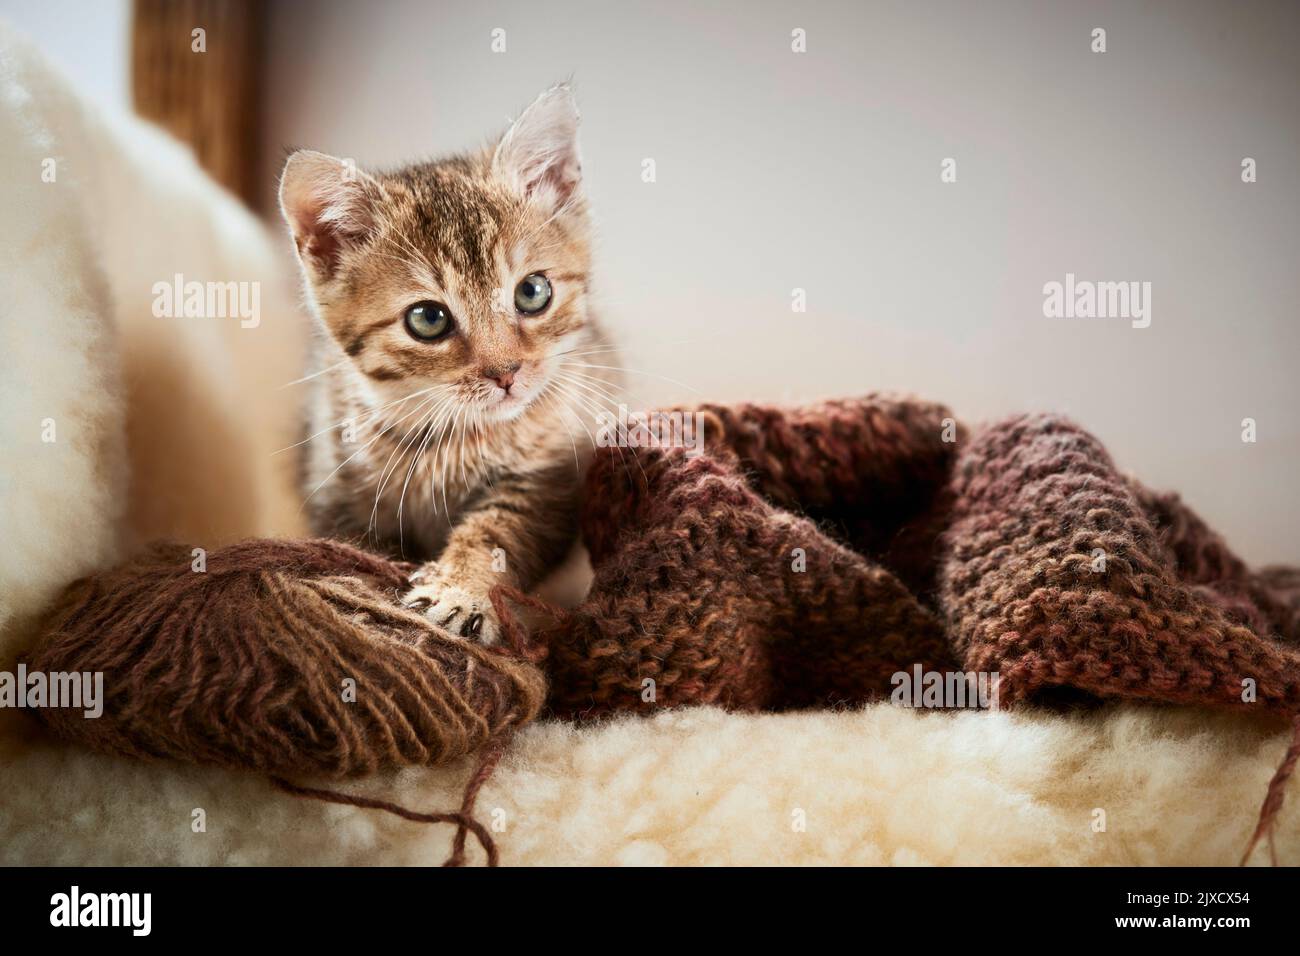 Chat domestique Un chaton tabby sur une chaise en osier avec des ustensiles de tricotage. Allemagne Banque D'Images